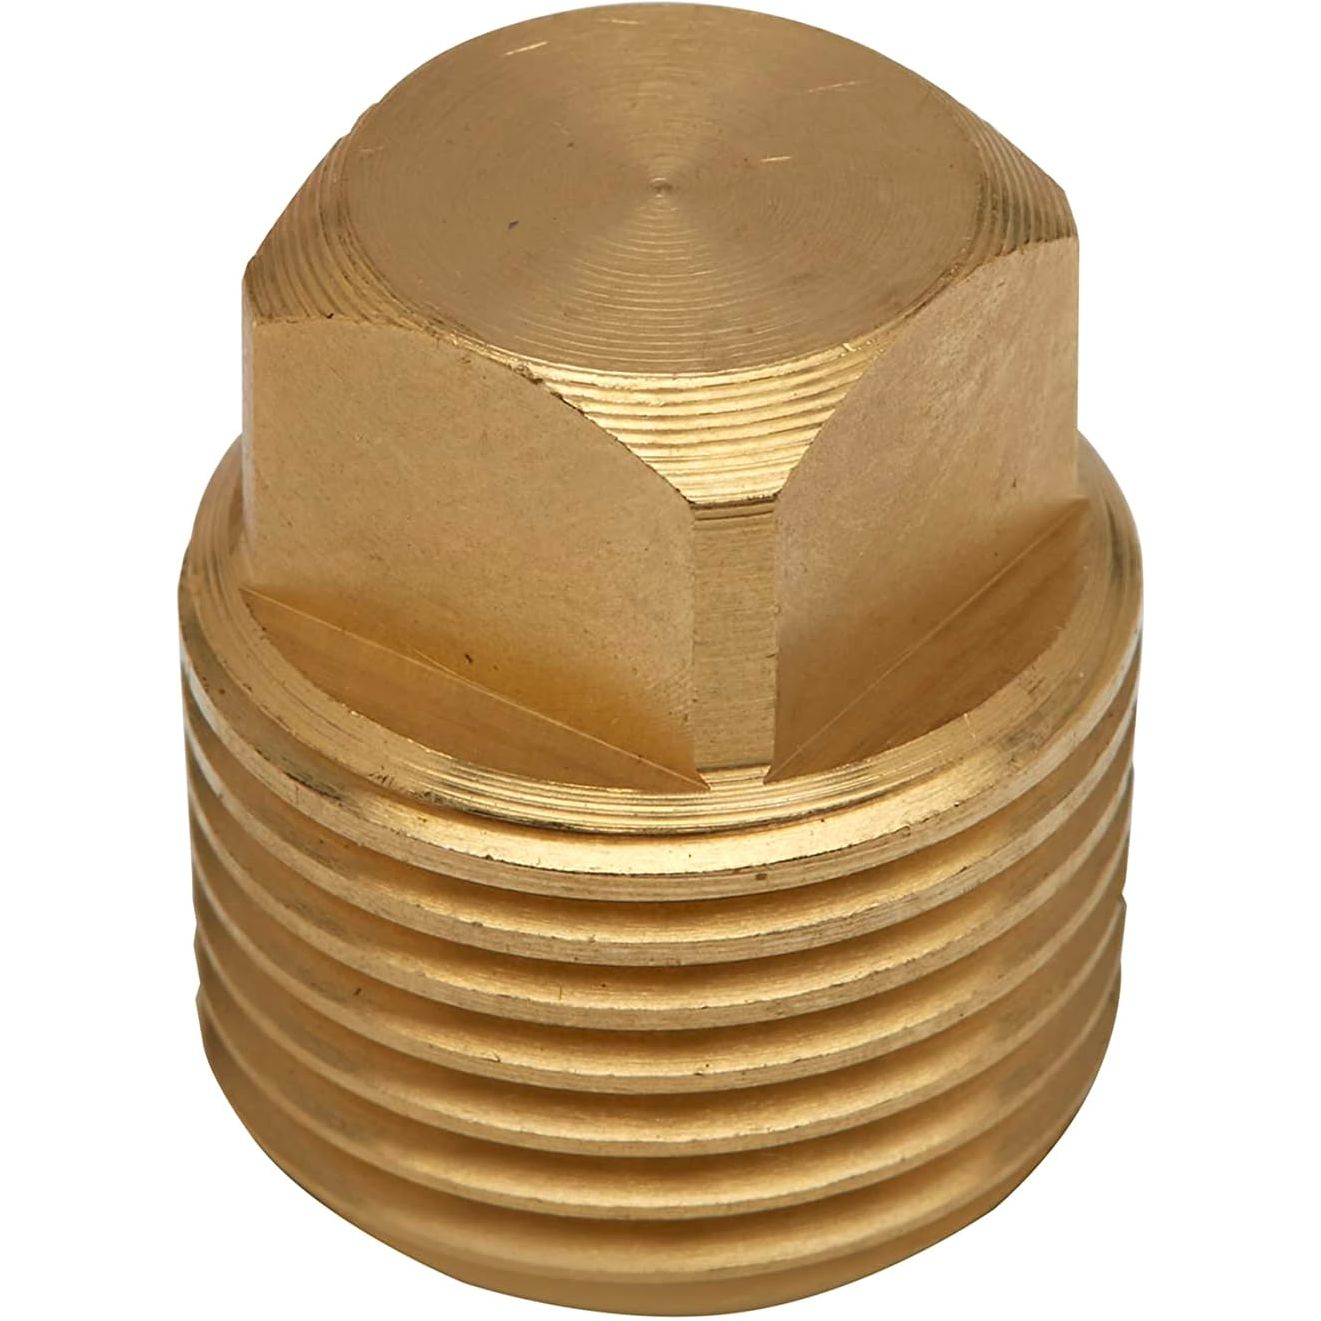 VLM 18761 Valmar Brass Plug (1/2" NPT)